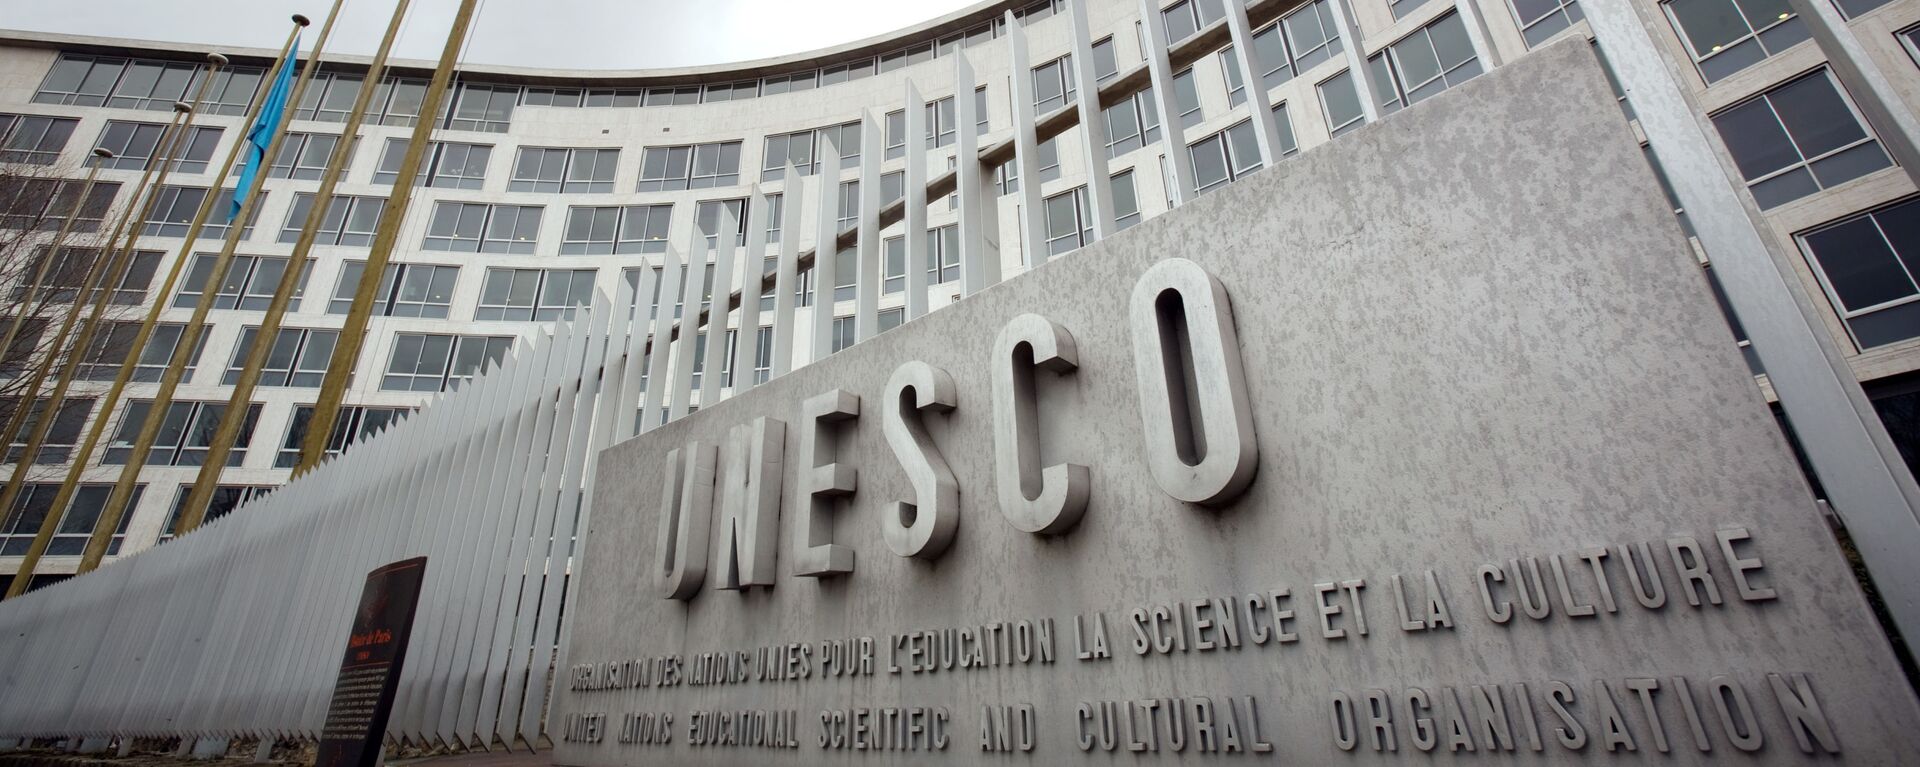 Штаб-квартира ЮНЕСКО в Париже  - Sputnik Việt Nam, 1920, 20.11.2019